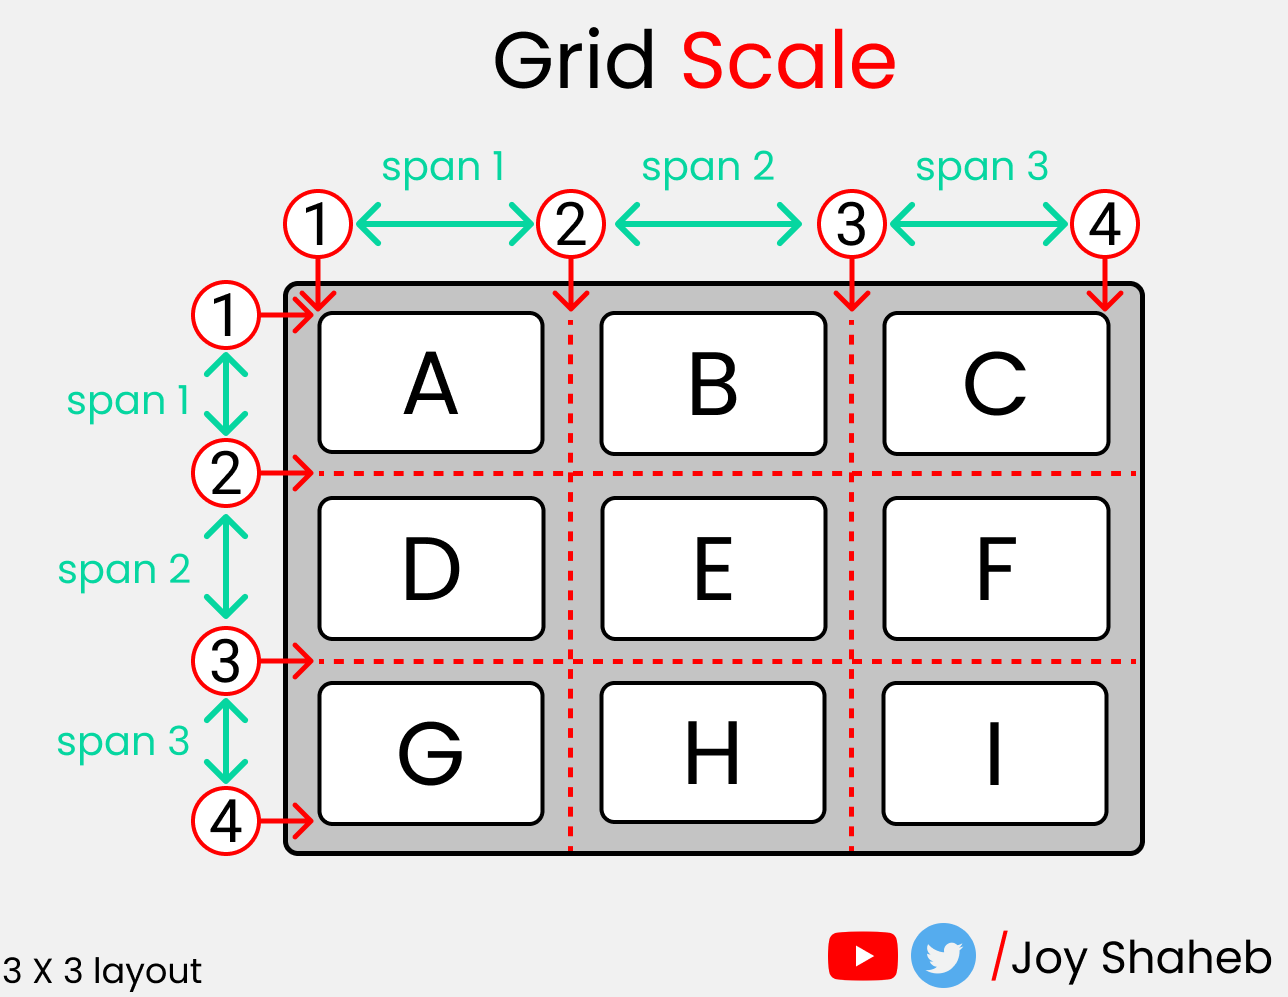 Полный самоучитель по CSS Grid со шпаргалкой 27